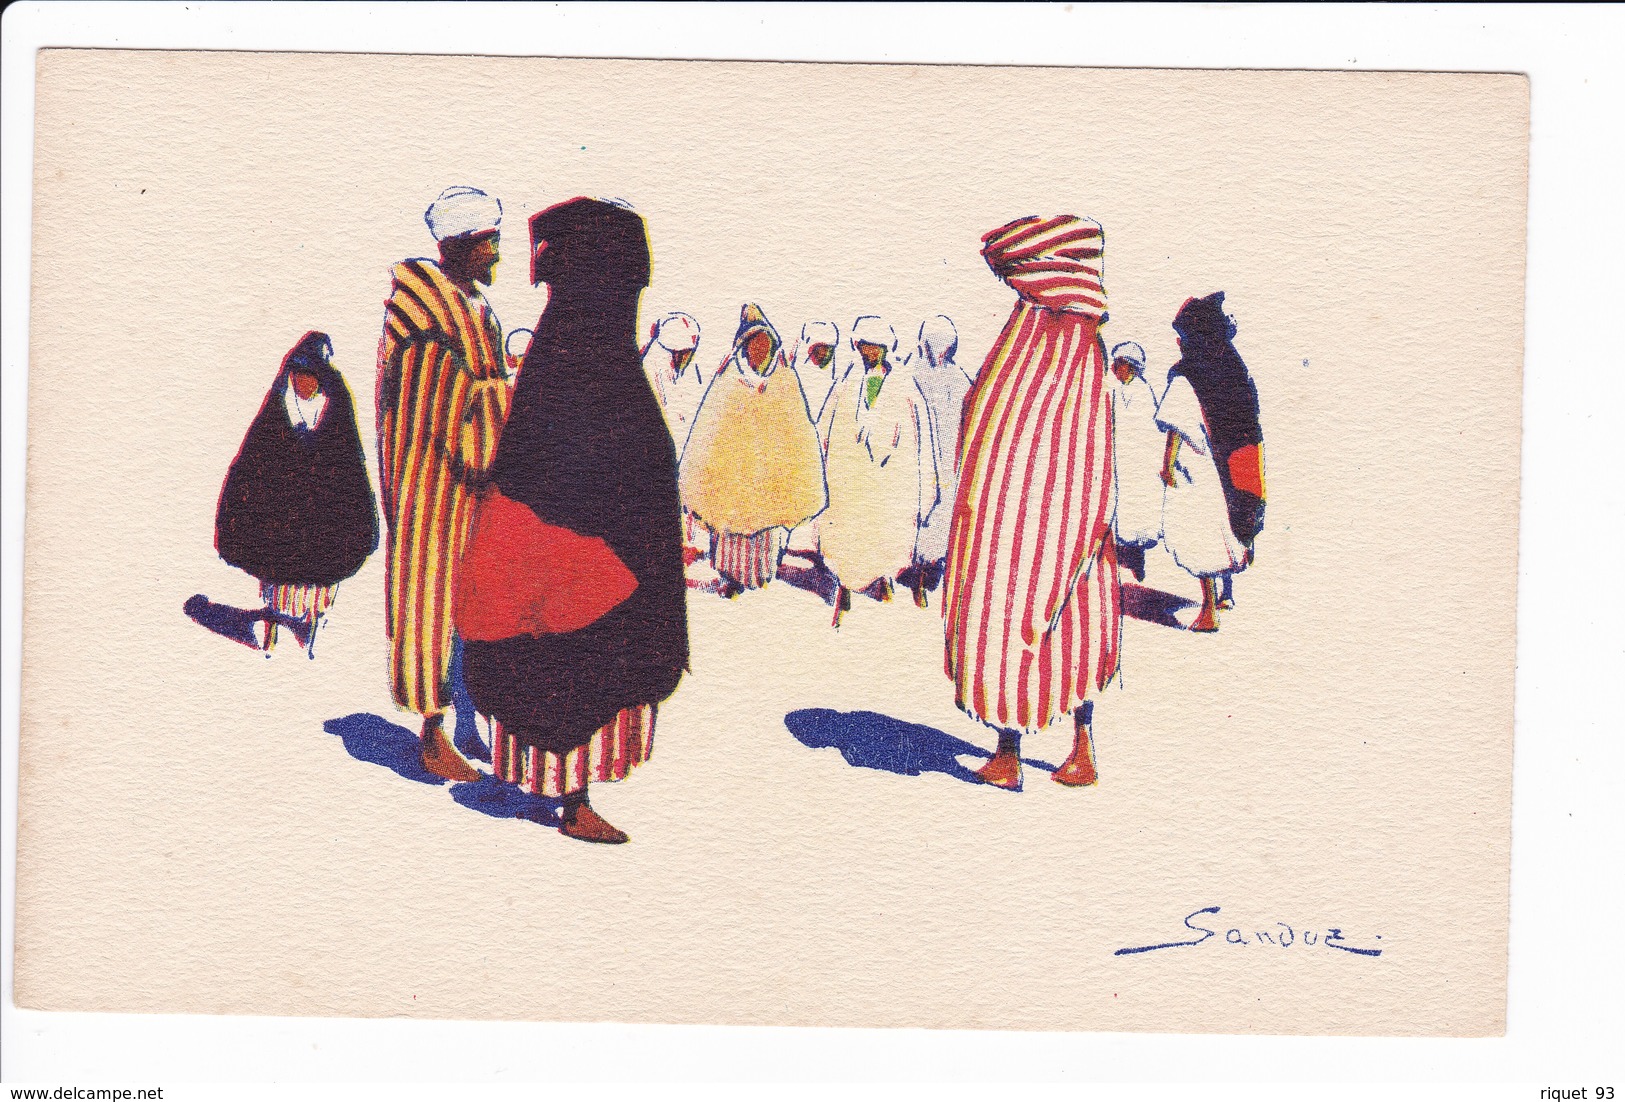 Lot 19 cp-Dessins signés Sandoz représentant des scènes de vie Nord-Africaines. Editée par la Cie Gle Transatlantique